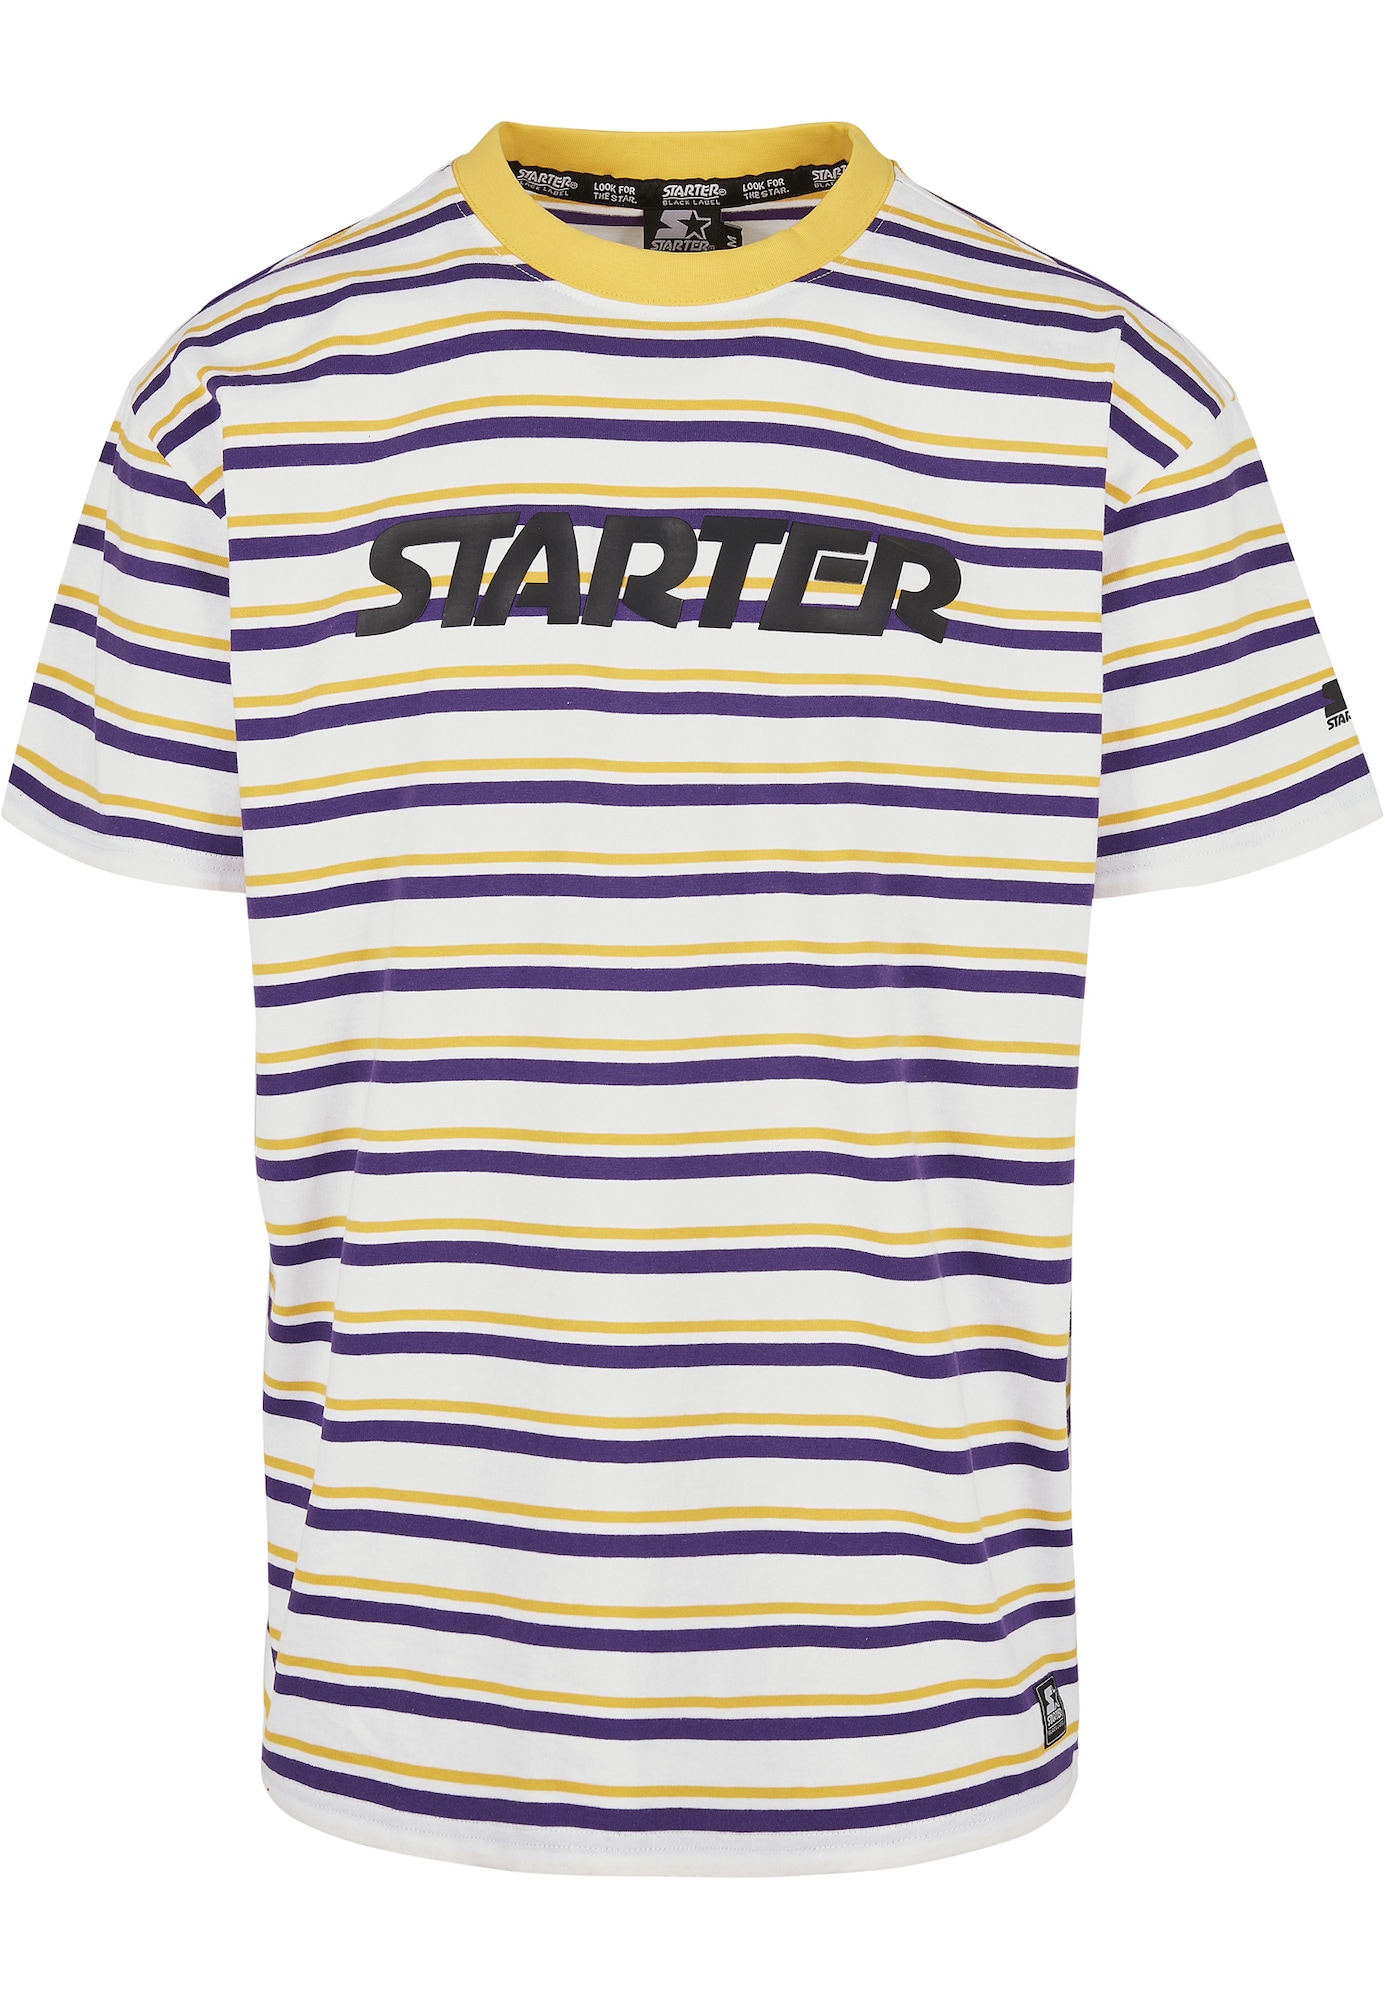 Starter Black Label Marškinėliai geltona / tamsiai violetinė / juoda / balta